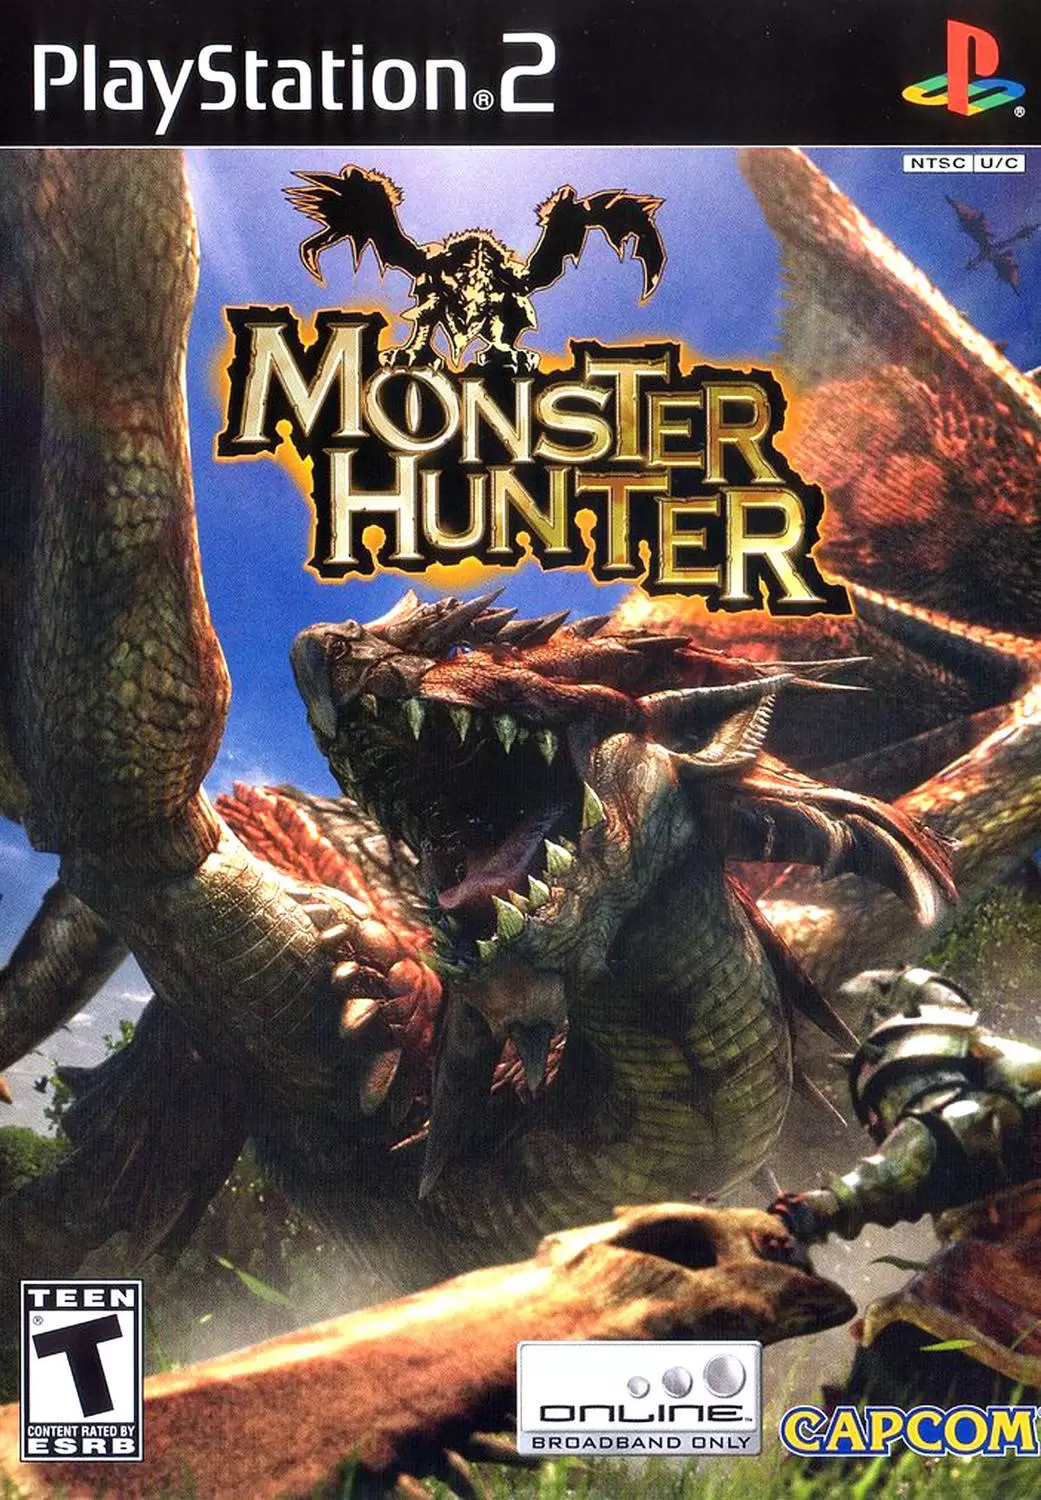 PS2 Games - Monster Hunter